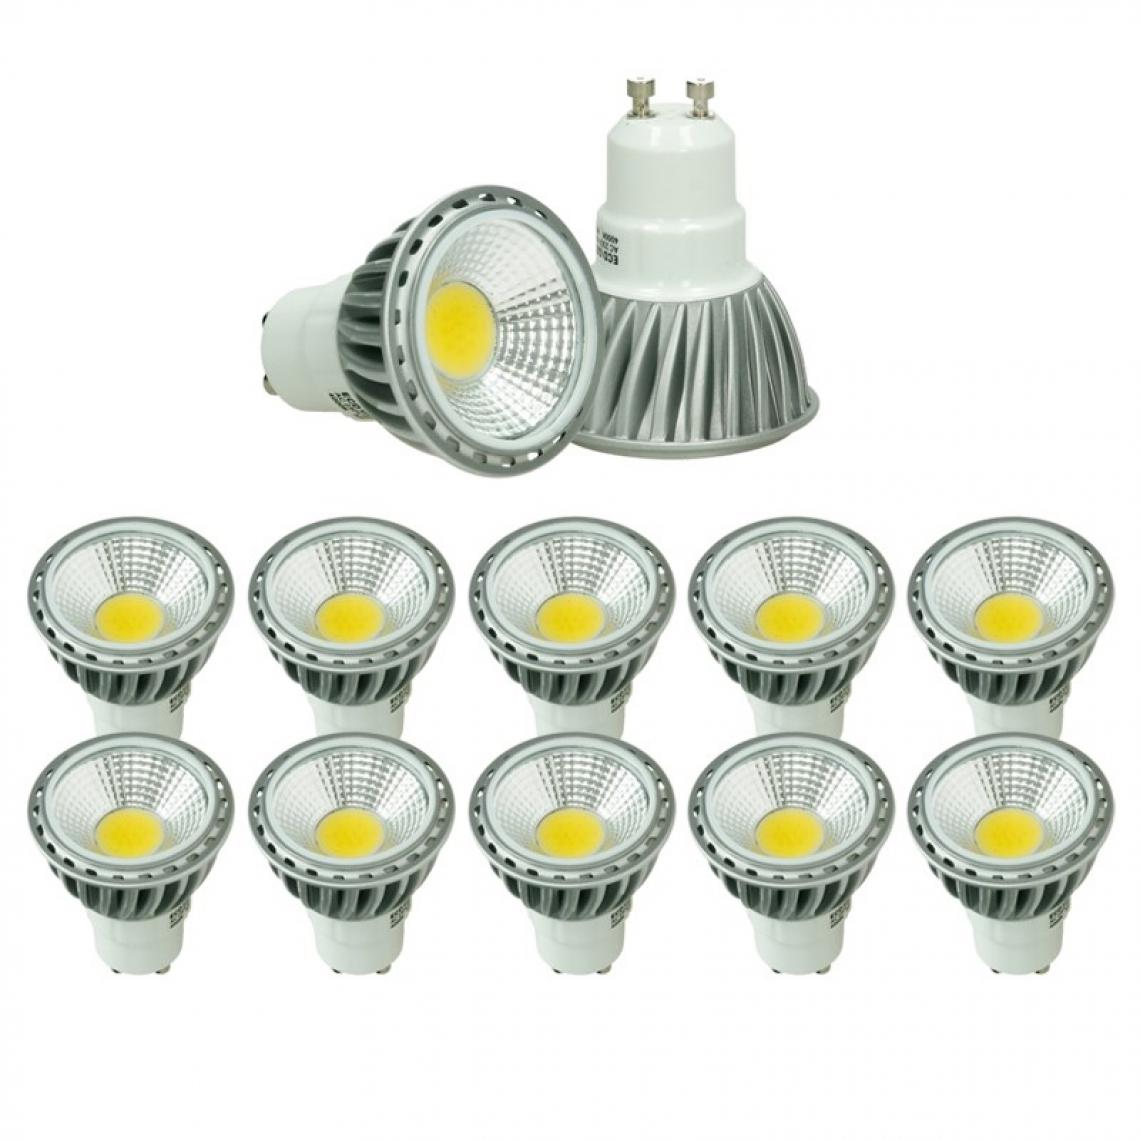 Ecd Germany - ECD Germany 10x Lot GU10 LED COB 6W Lumière Spot Ampoules à économie d'énergie de Haute Puissance remplacé 40W ca. 321 Lumen Lampe Halogène Blanc Neutre 4000K - Ampoules LED